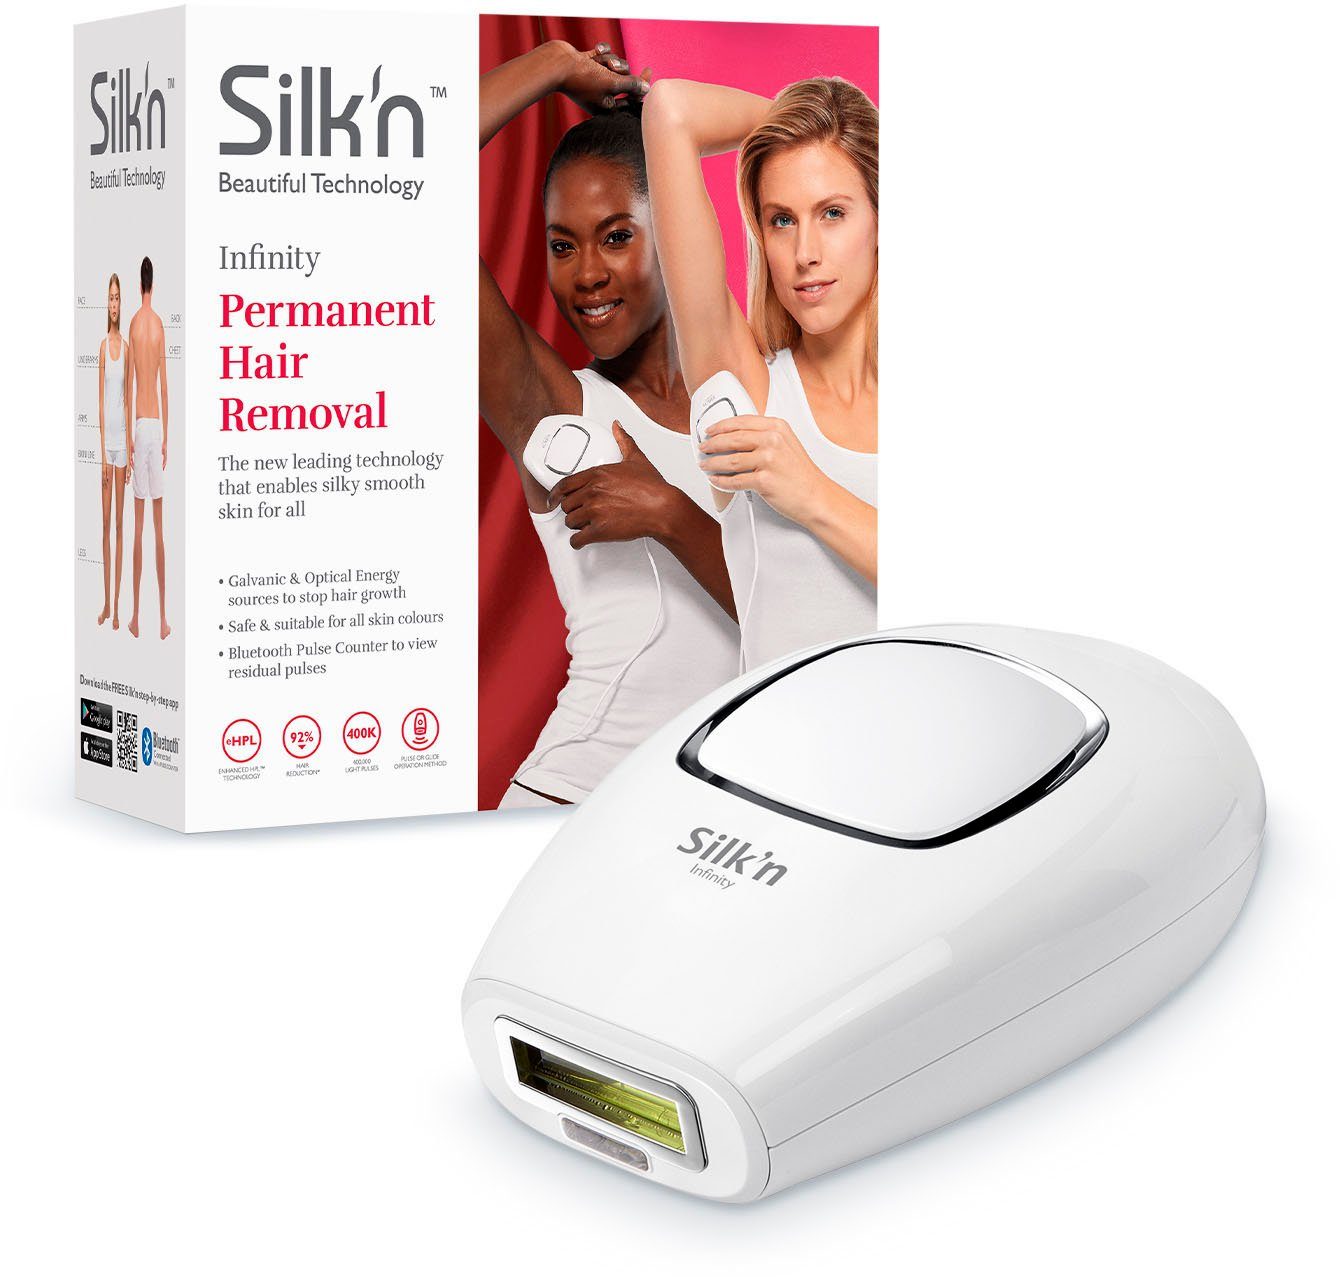 Silk'n HPL-Haarentferner Silk`n Infinity, 400.000 Lichtimpulse, für alle  Haut- und Haarfarben geeignet online kaufen | OTTO